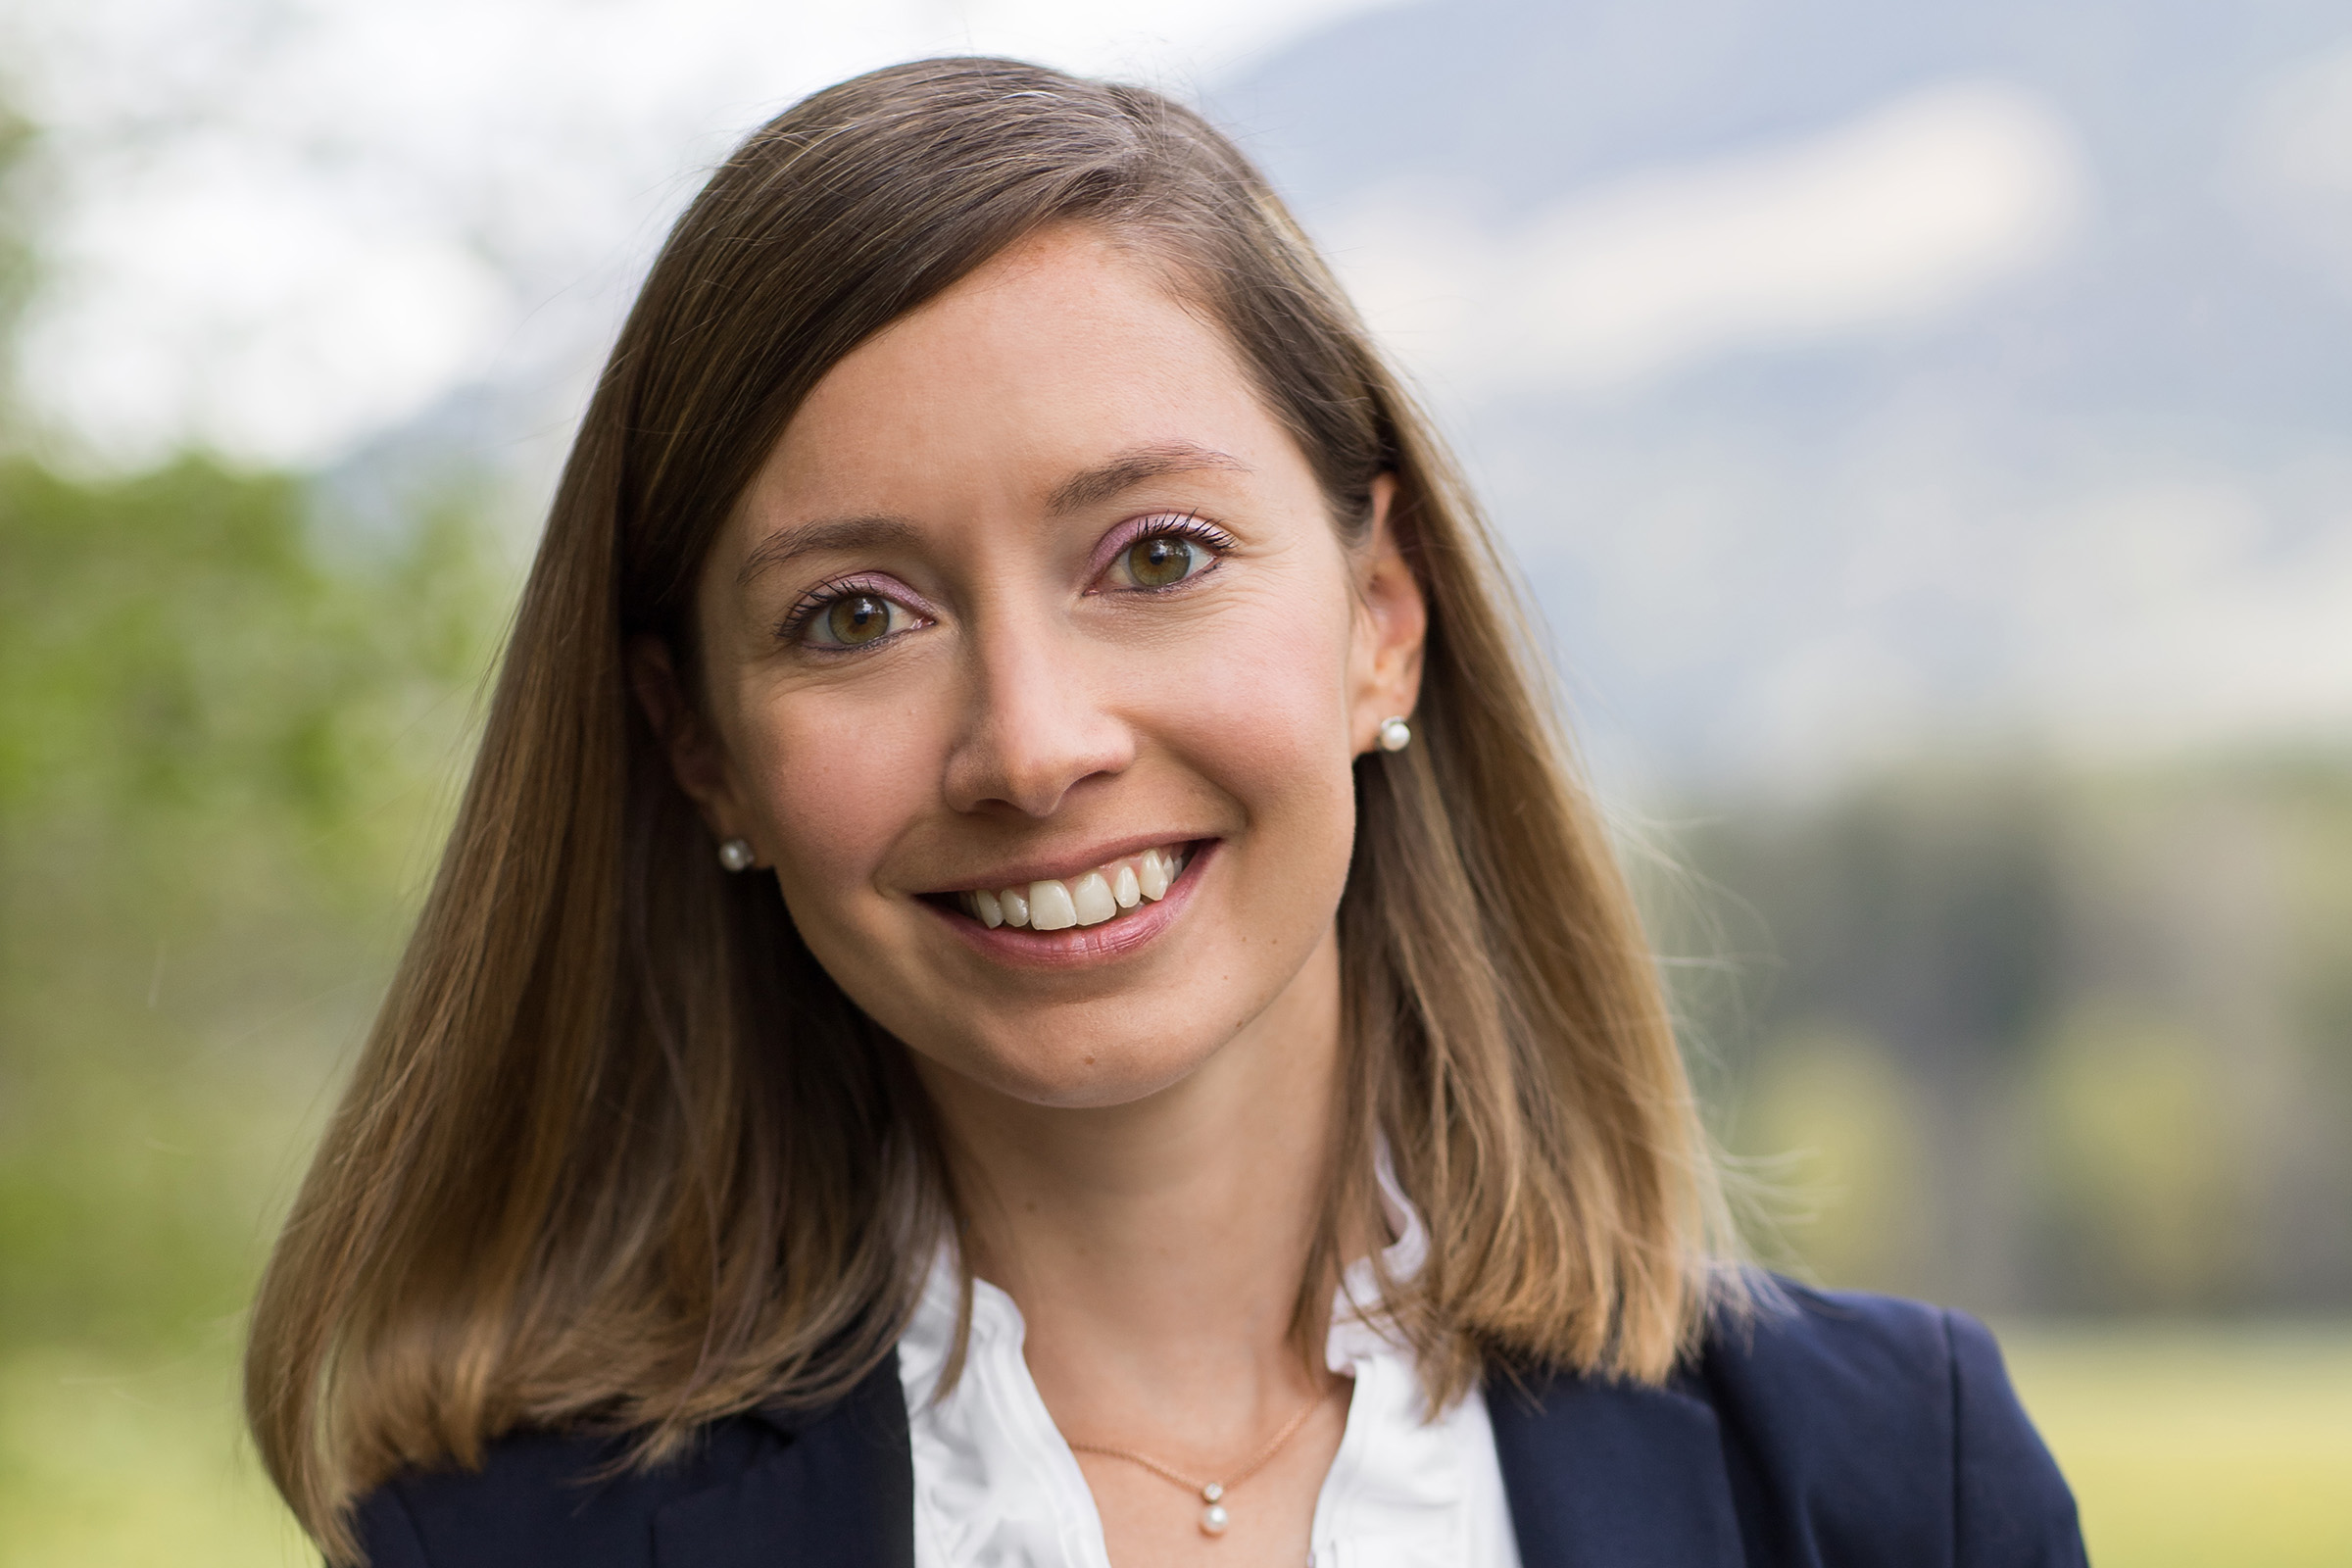 Generalversammlung 2021: Ständerätin Johanna Gapany in den Vorstand der SUISA gewählt